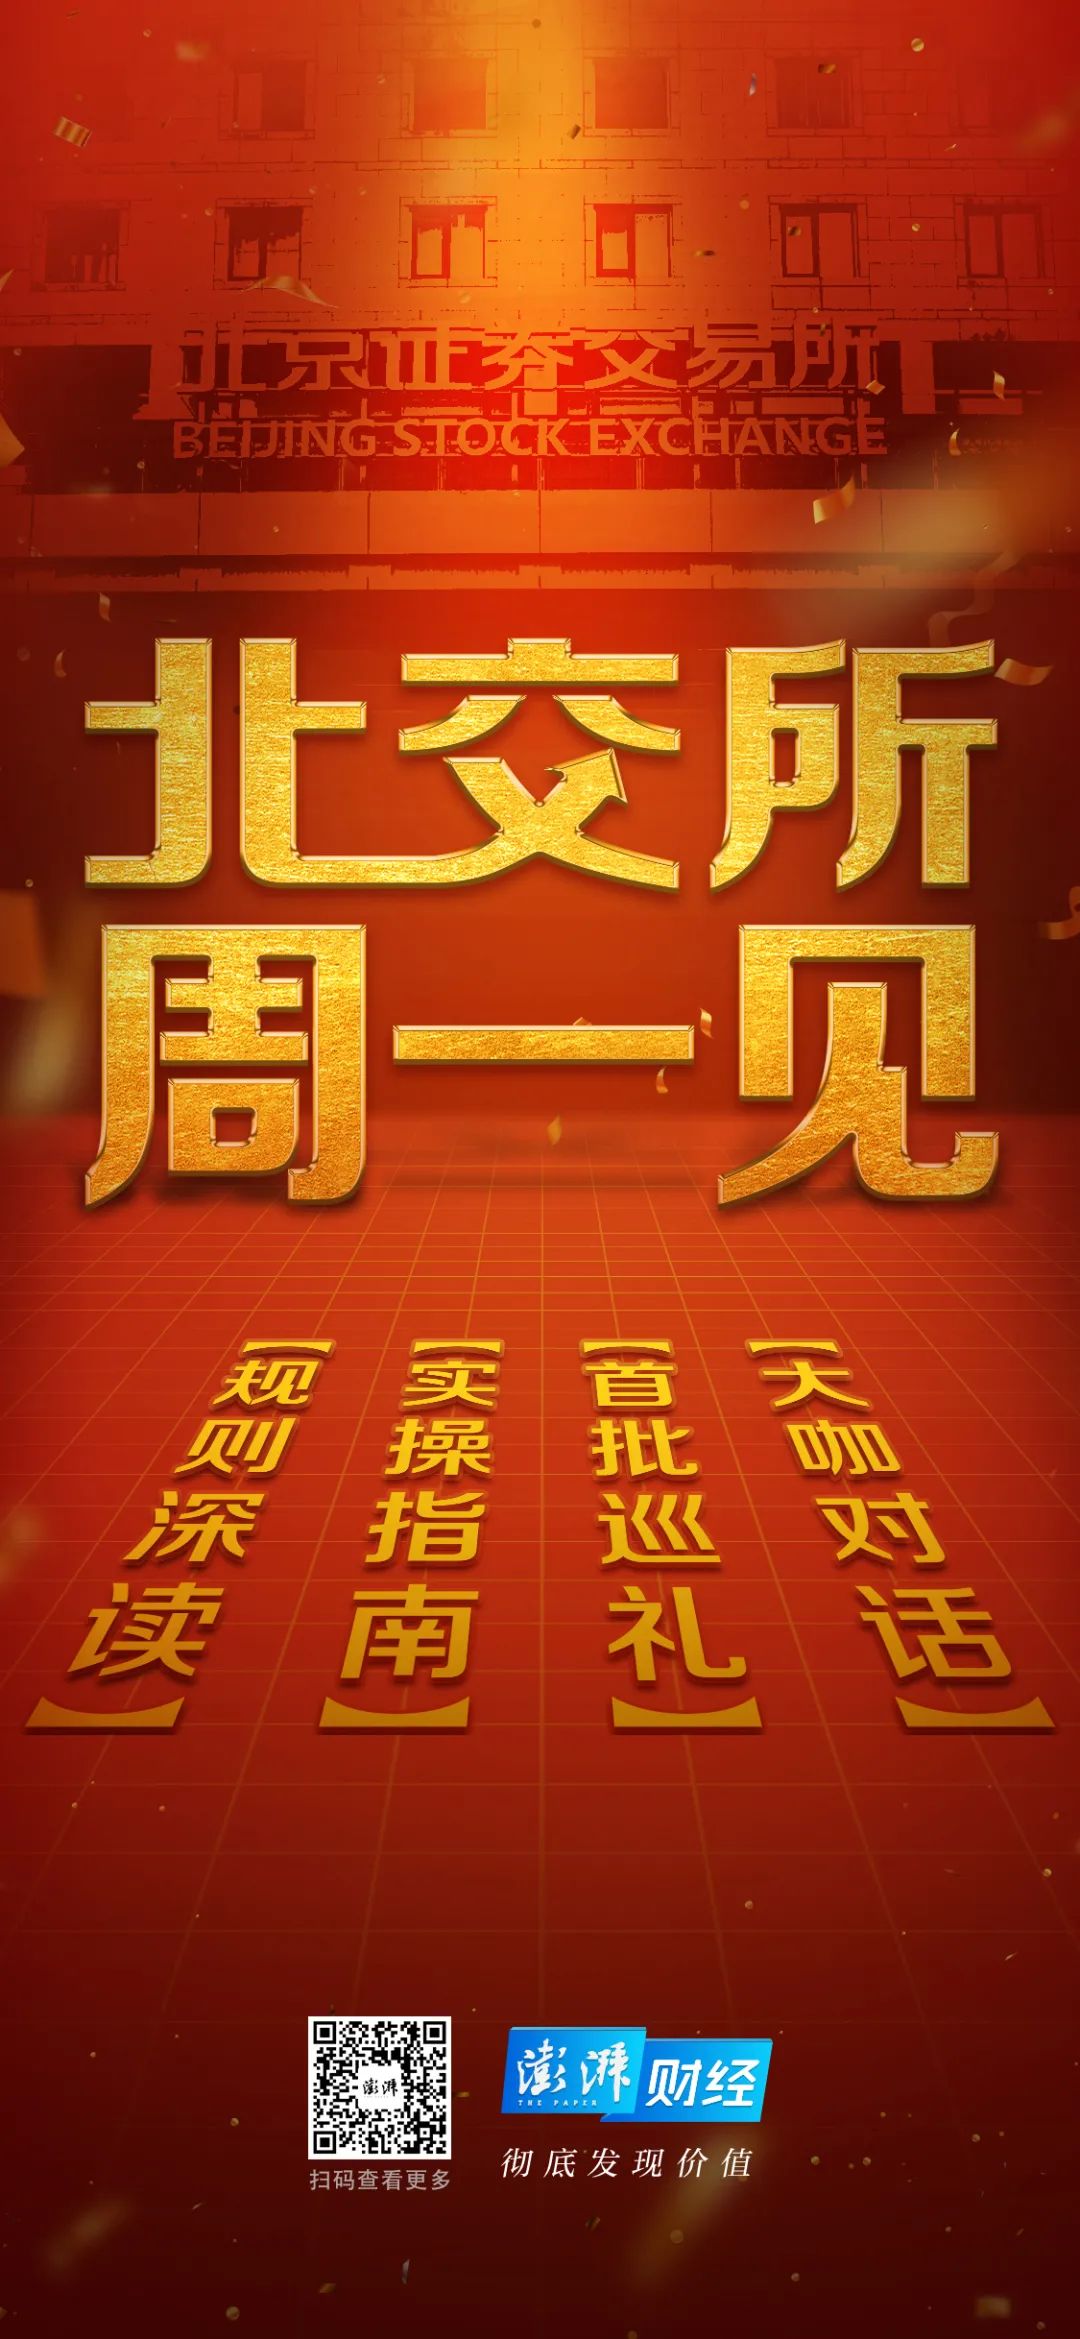 中国资本市场的又一座丰碑——北京证券交易所今日正式开市交易